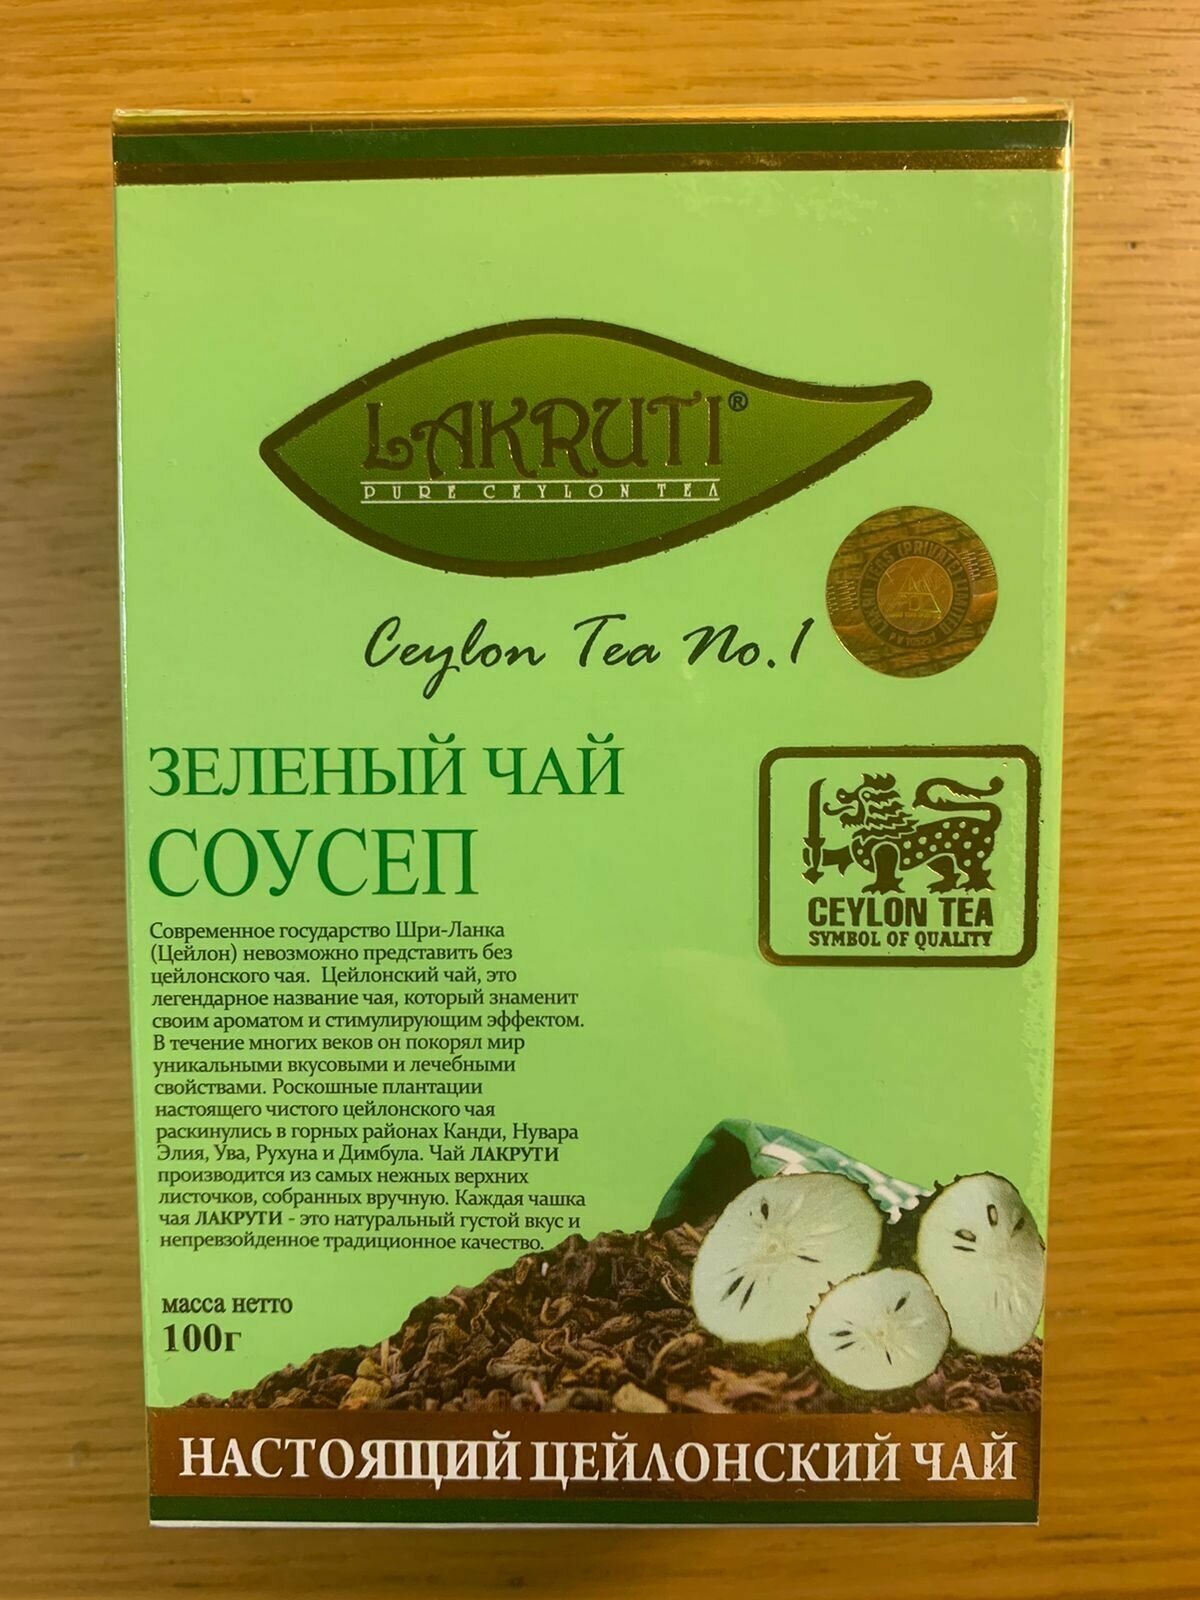 Настоящий цейлонский зеленый чай Lakruti "Соусеп" 100 гр.